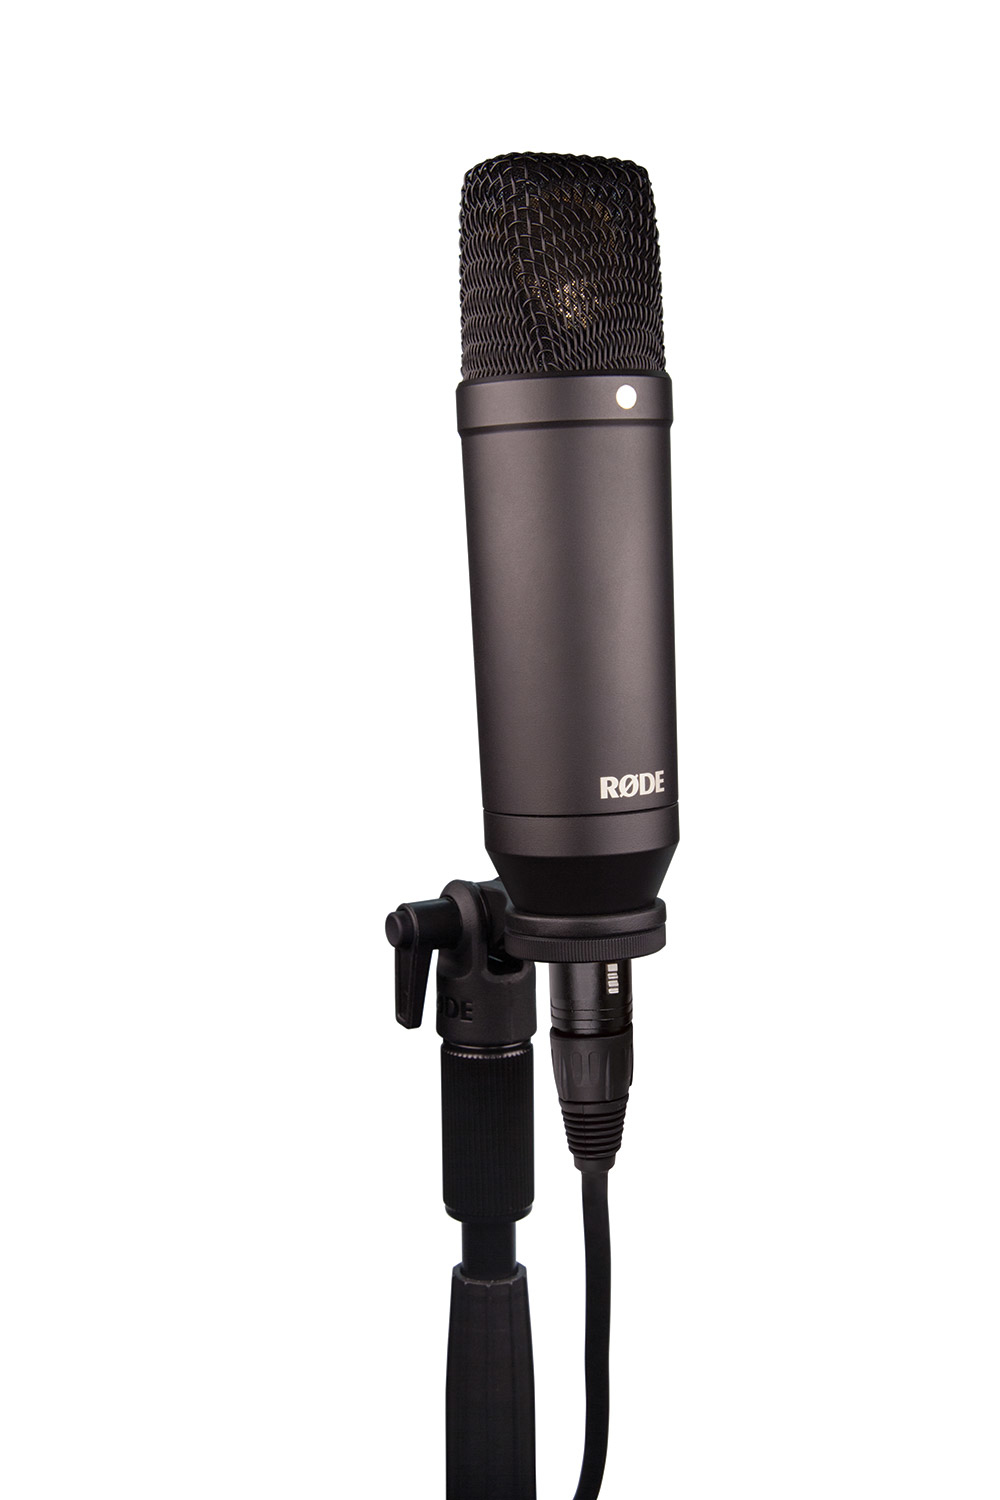 RODE RØDE NT1-KIT - Studio-Mikrofon - -29 dB - 20 - 20000 Hz - 1% - Kardioide - Verkabelt